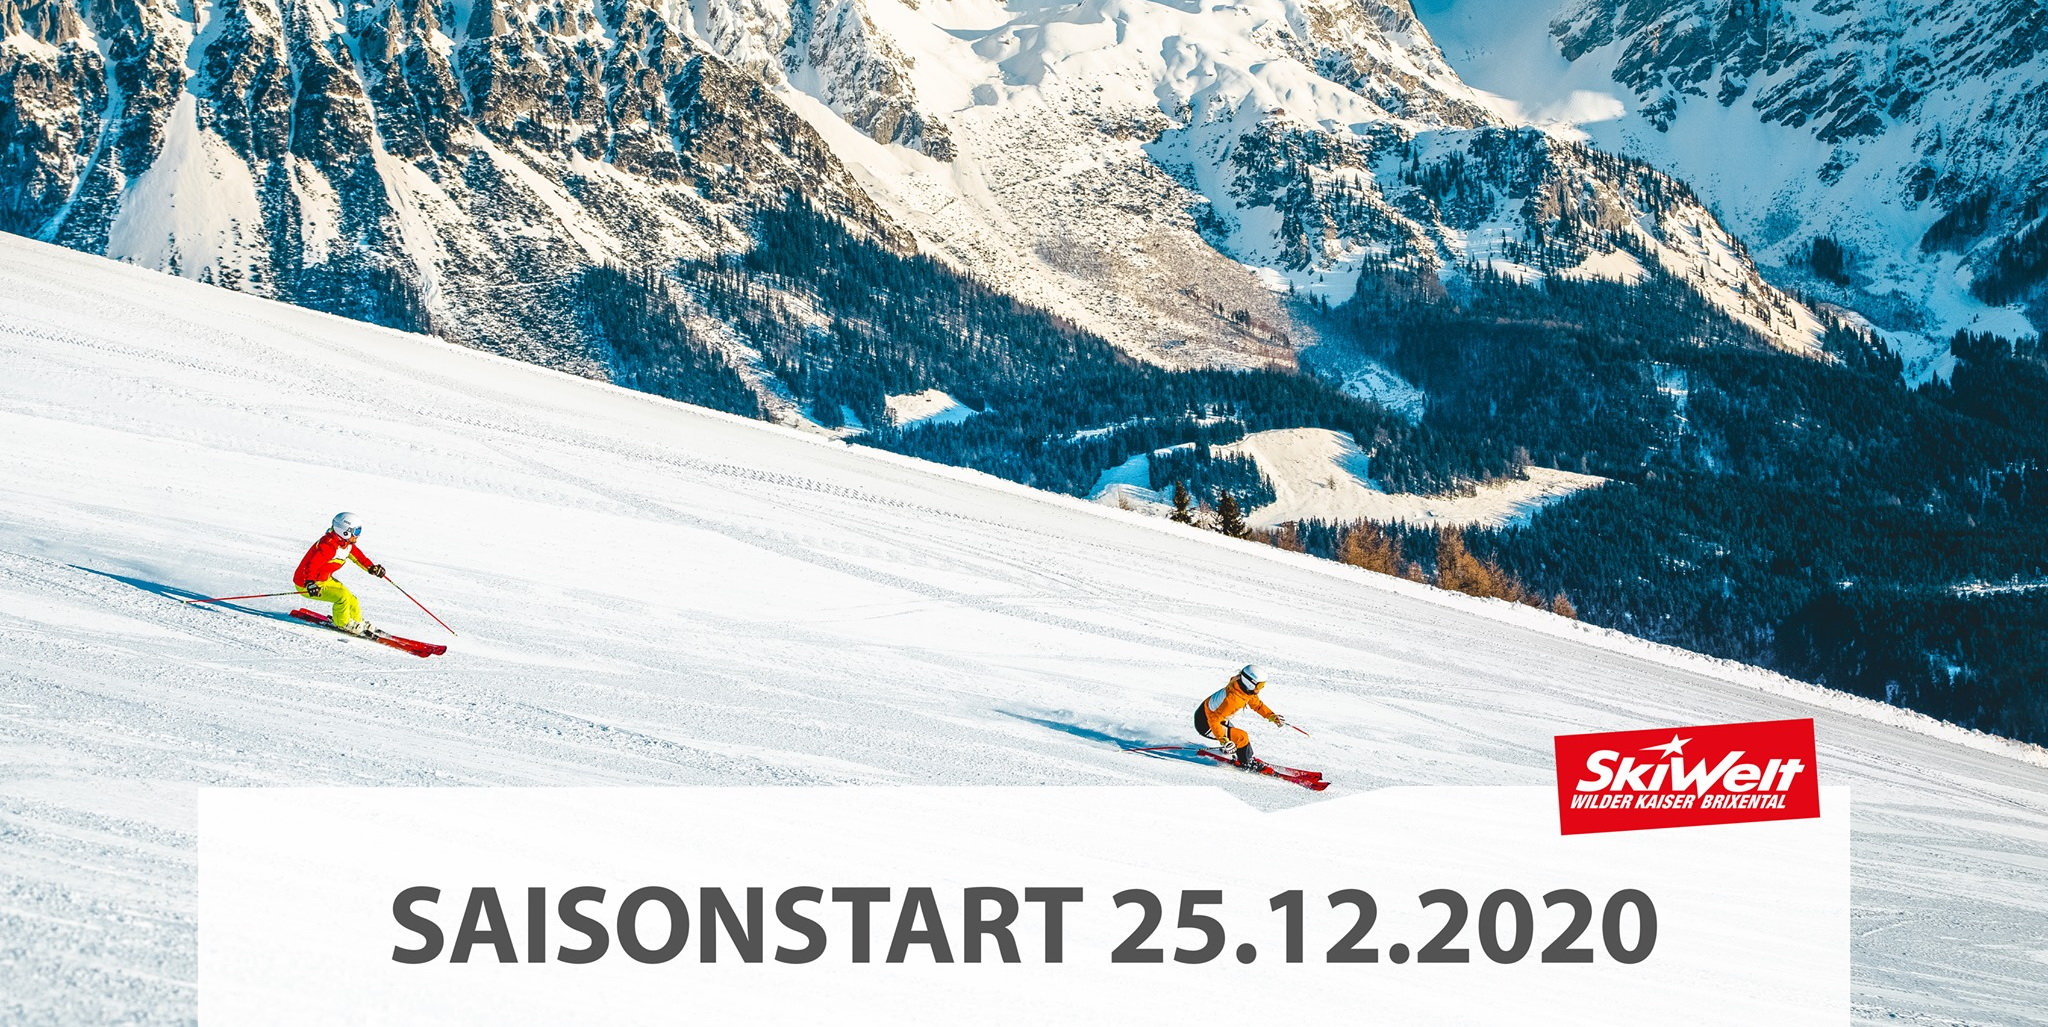 Skiwelt: nyitás december 25-én